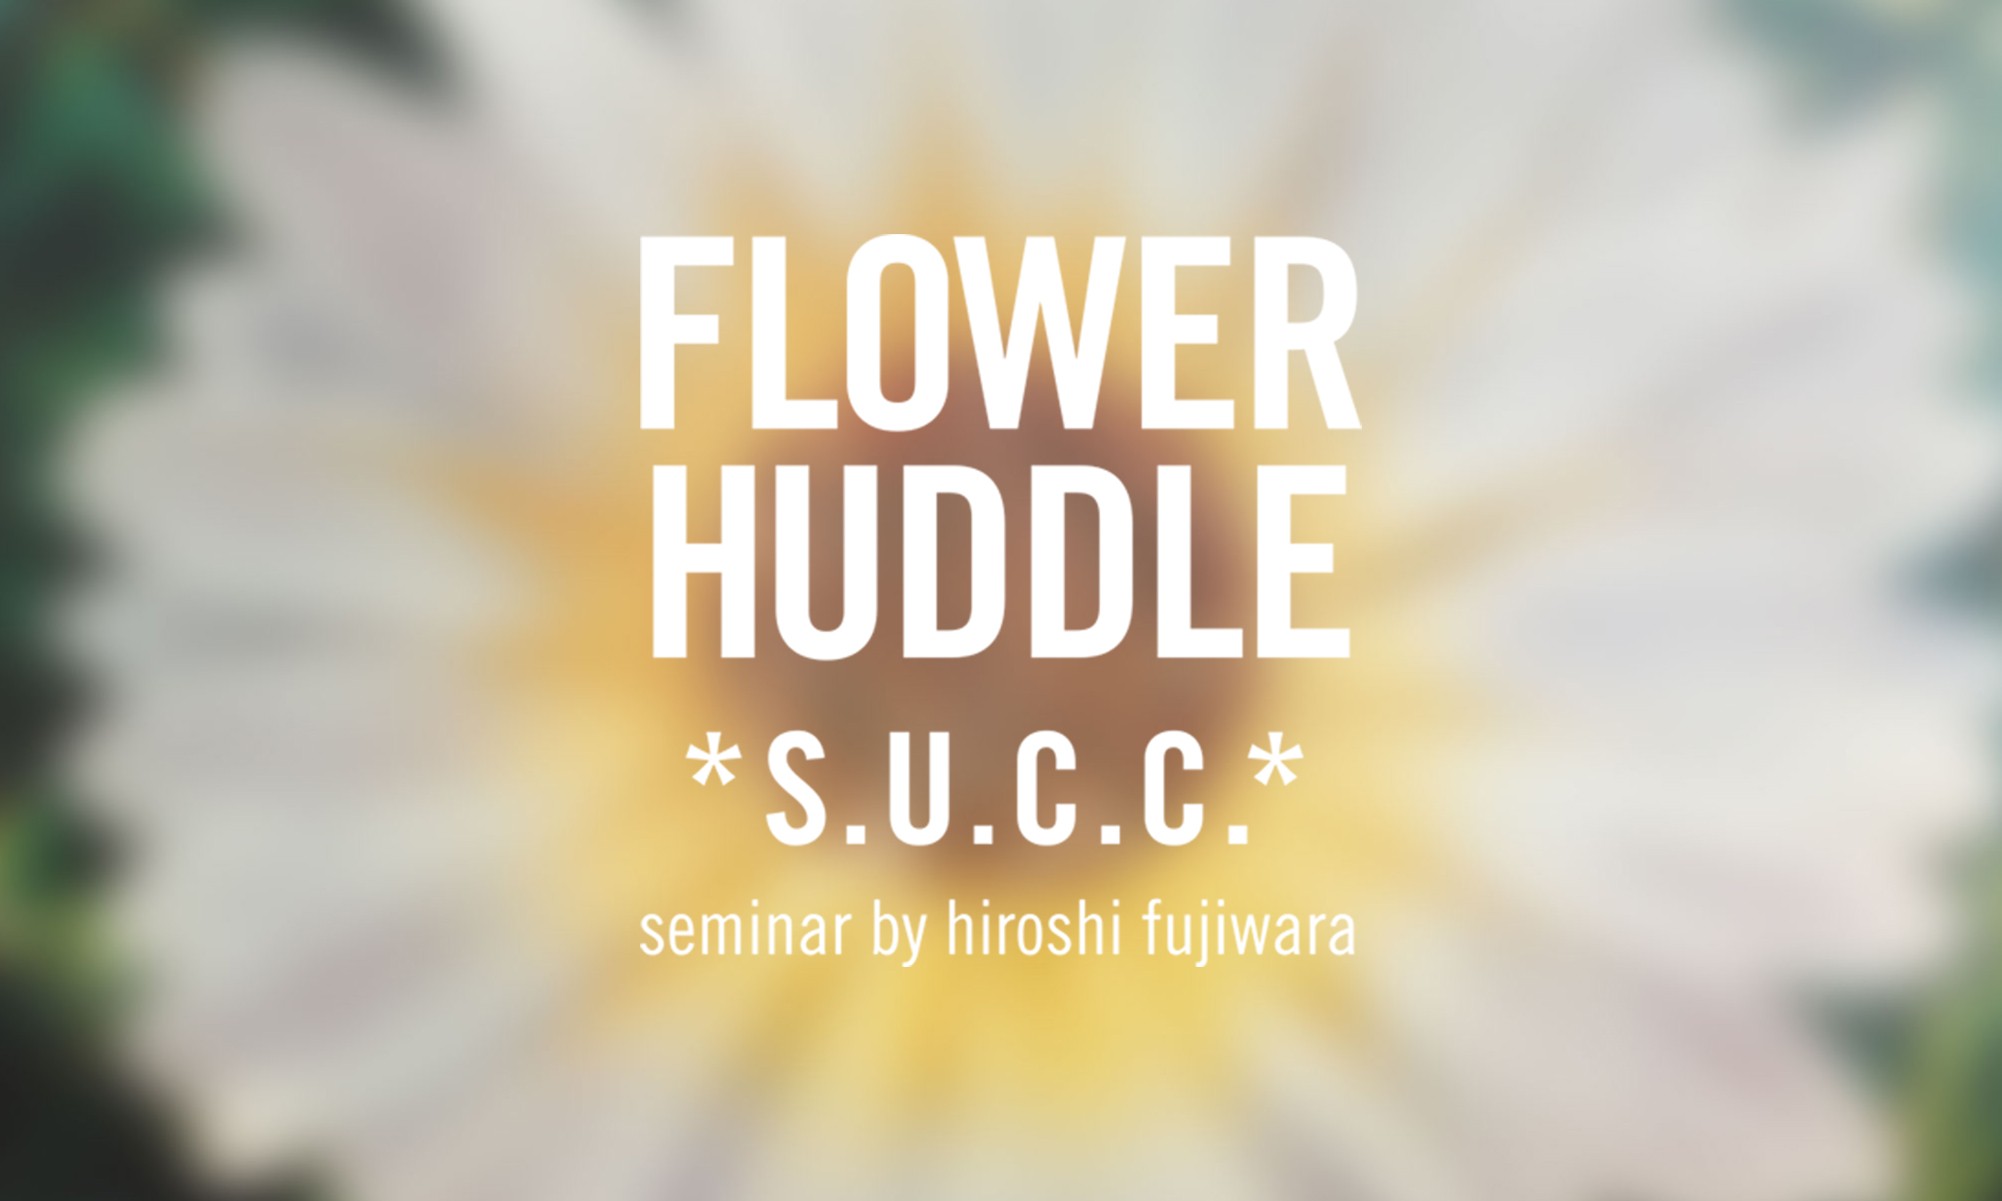 花的延续，藤原浩组织 S.U.C.C.举办 “FLOWER HUDDLE” 主题展览